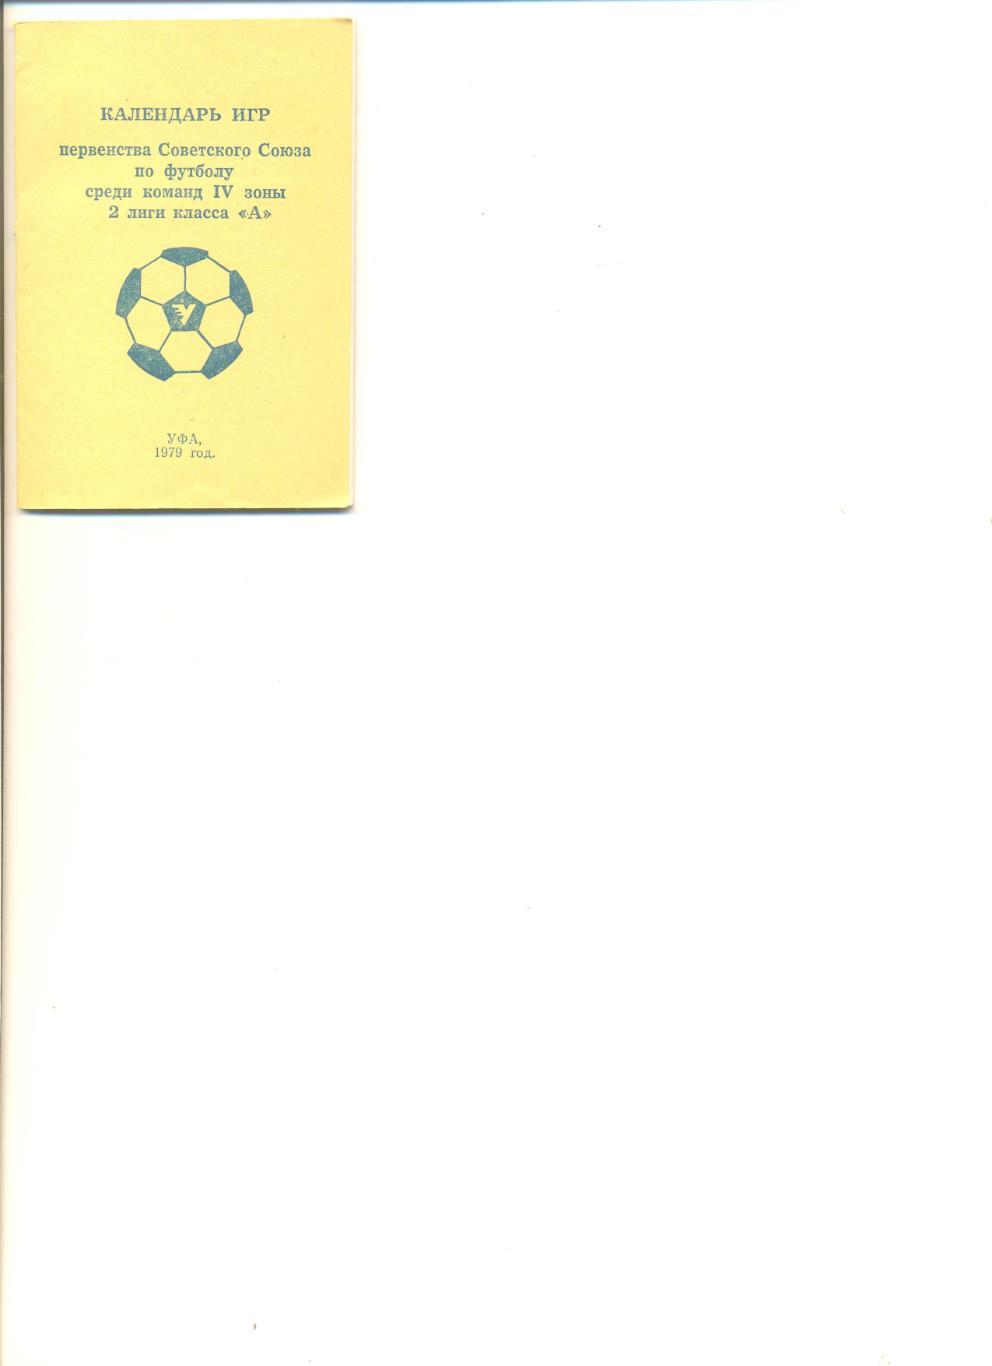 Уфа - 1979 г. Календарь игр. Мини-издание. Тираж 1000.